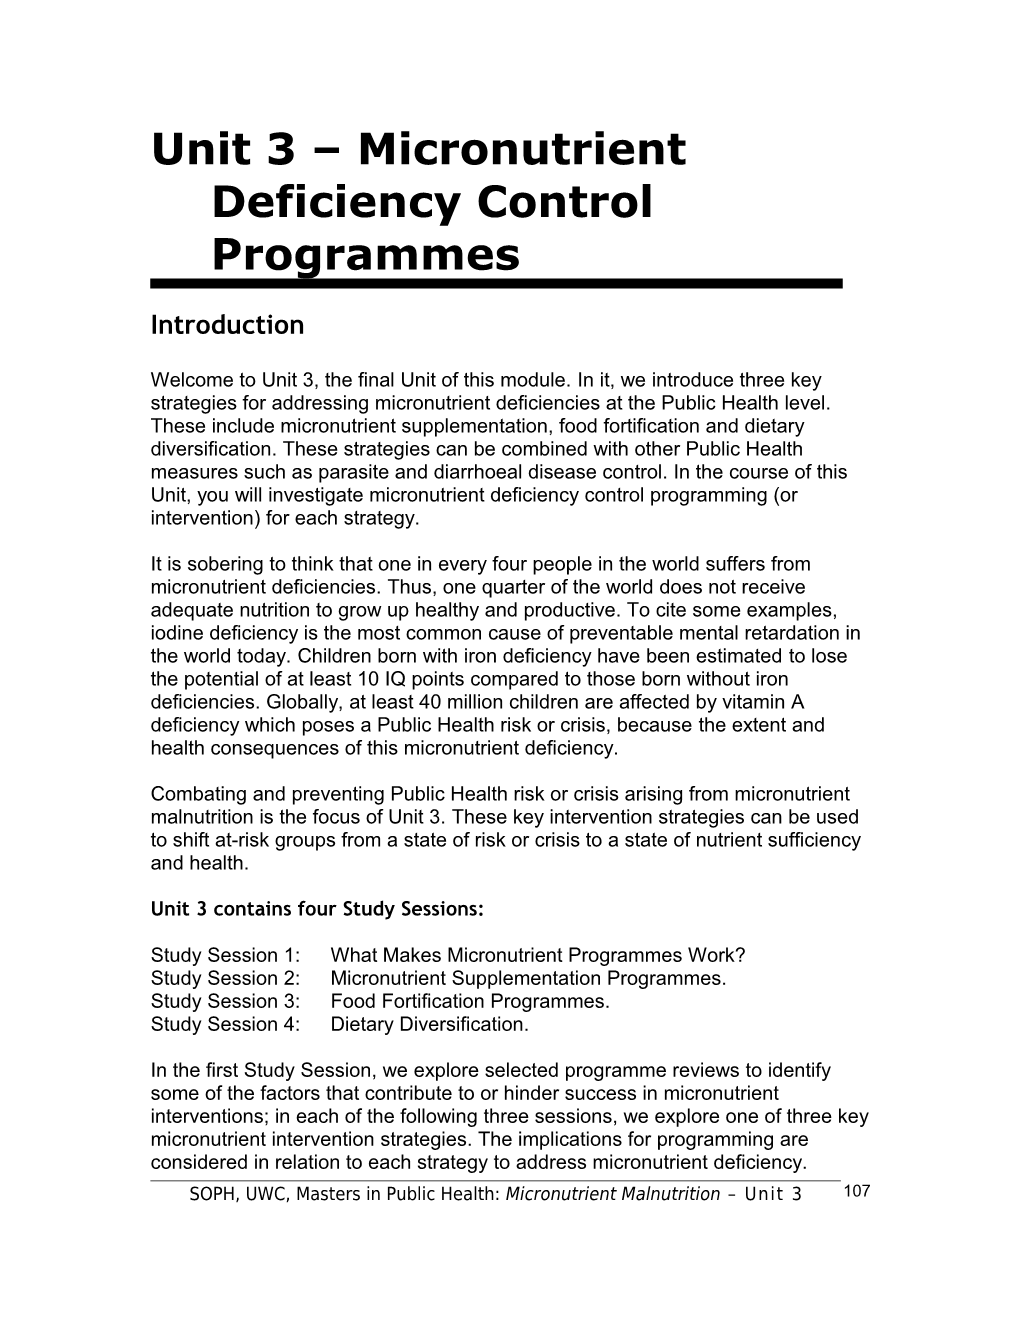 Unit 3 Micronutrient Deficiency Control Programmes